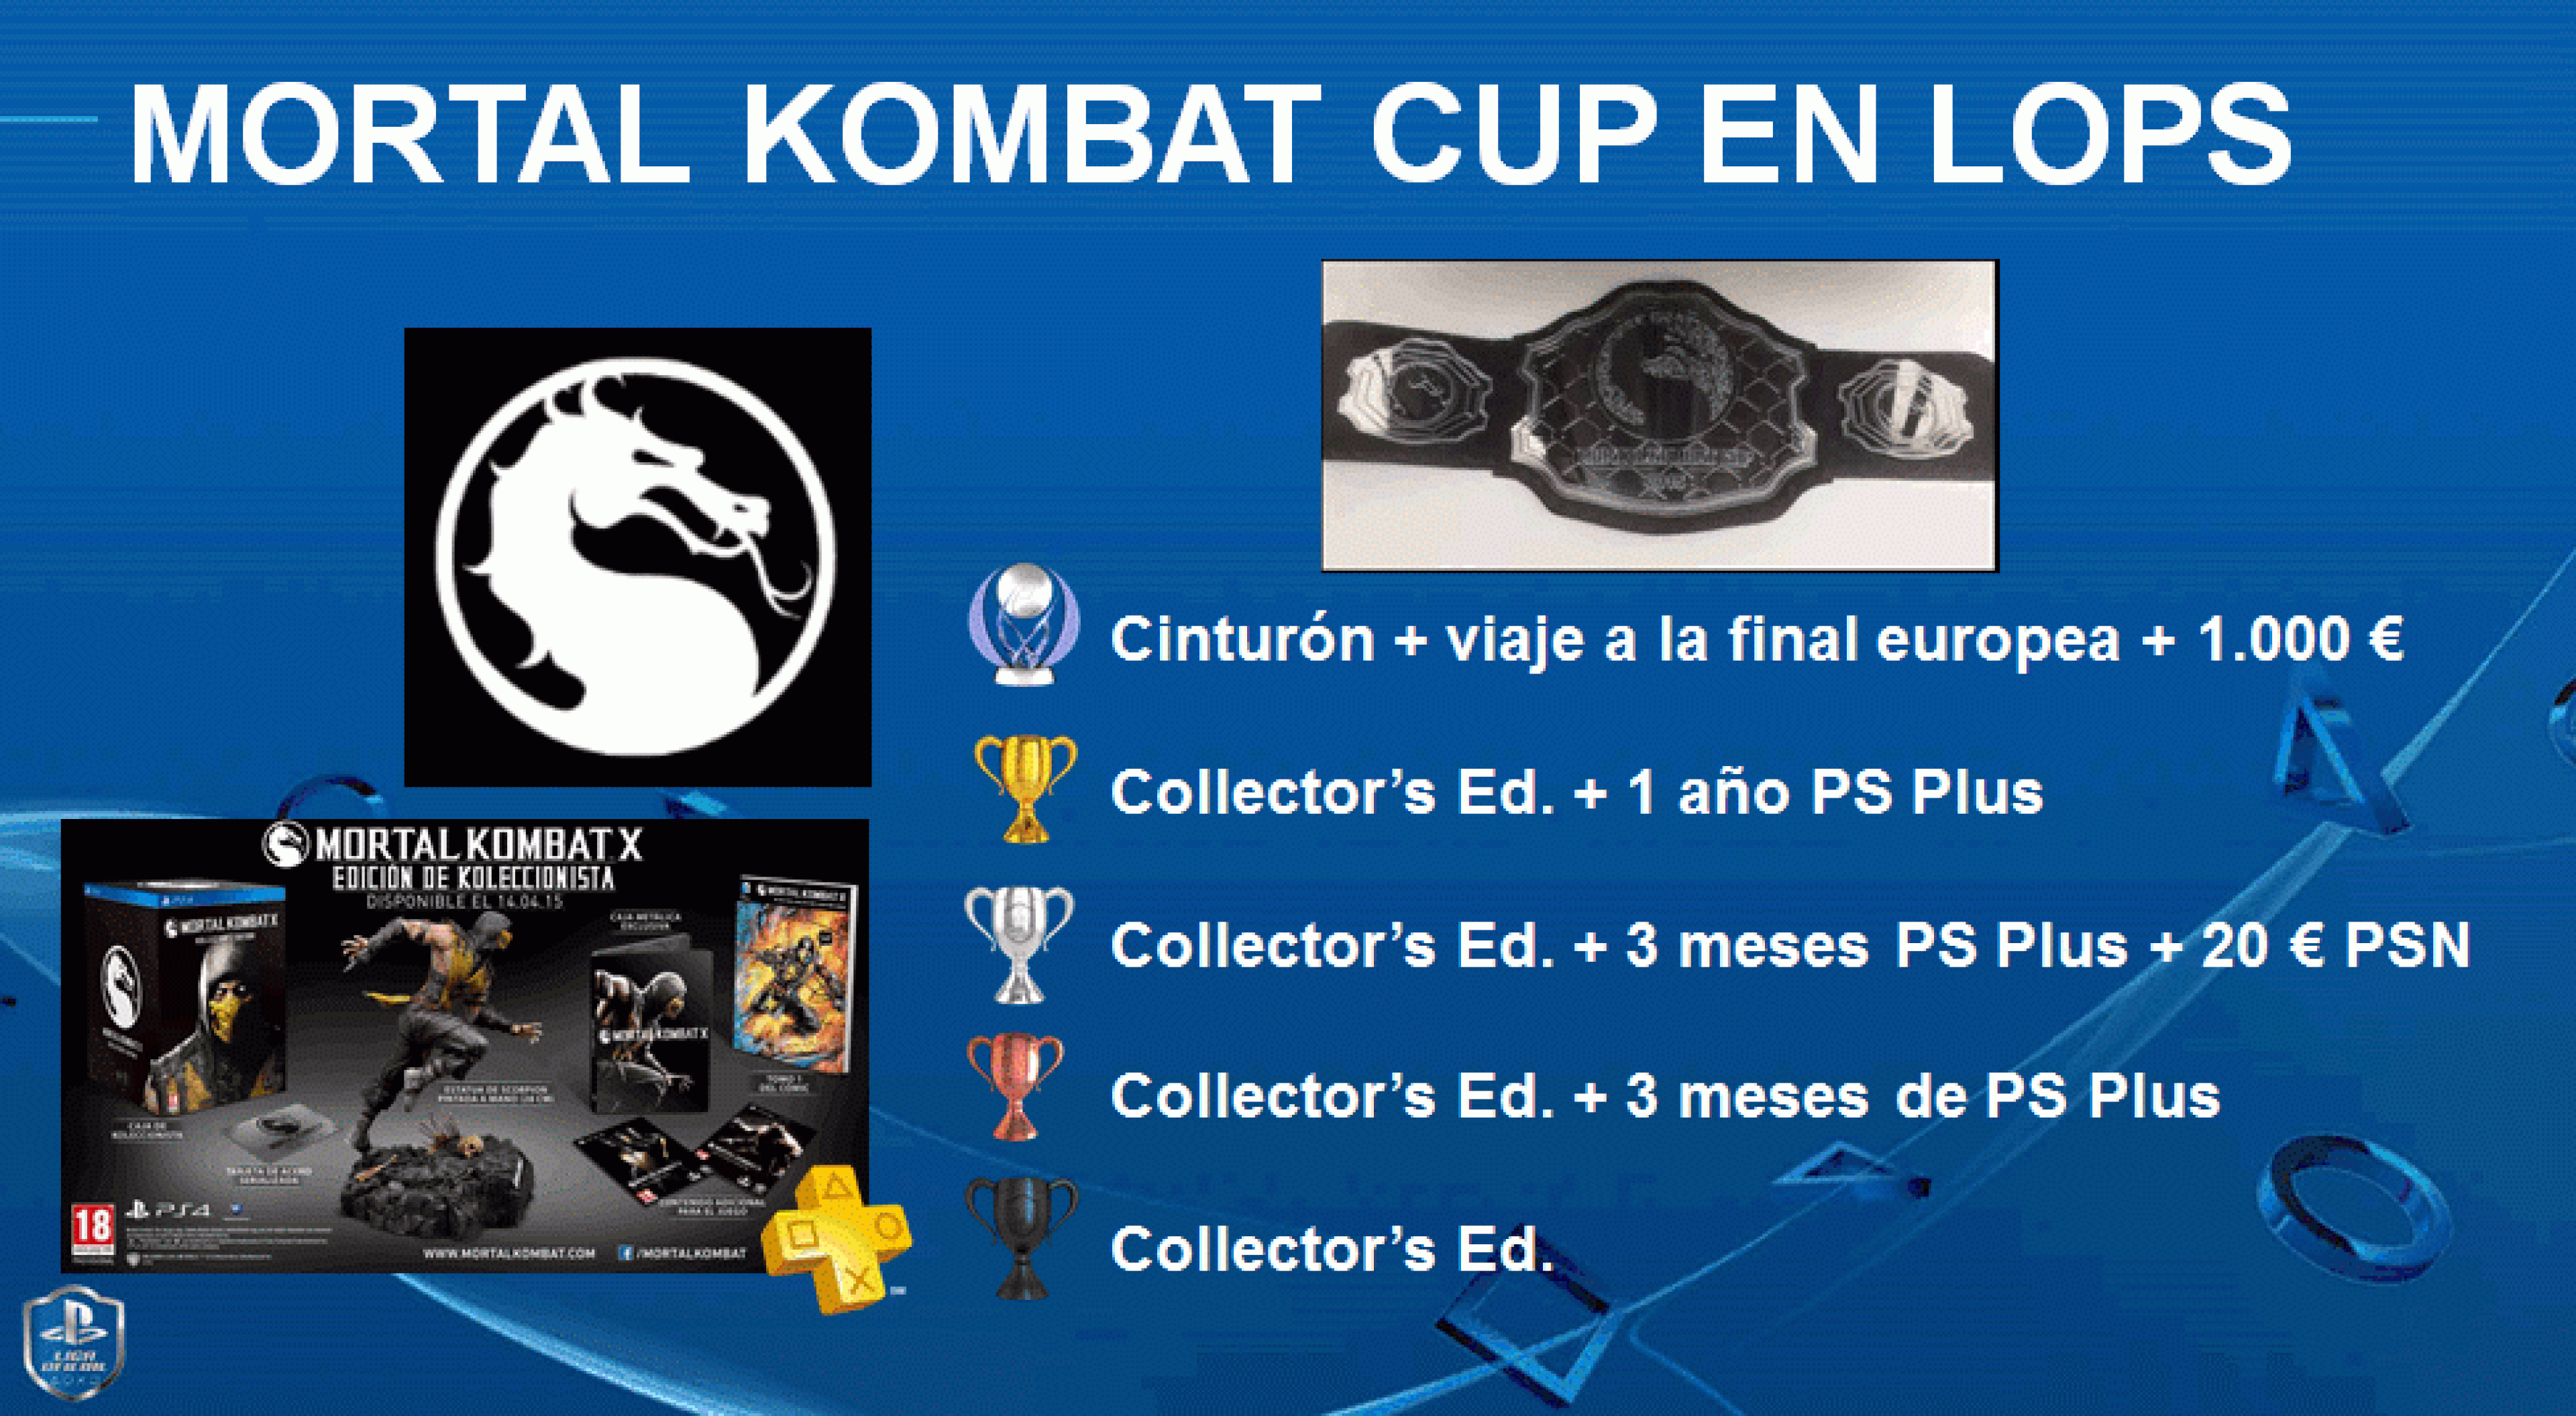 La Liga Oficial PlayStation ficha a Mortal Kombat X